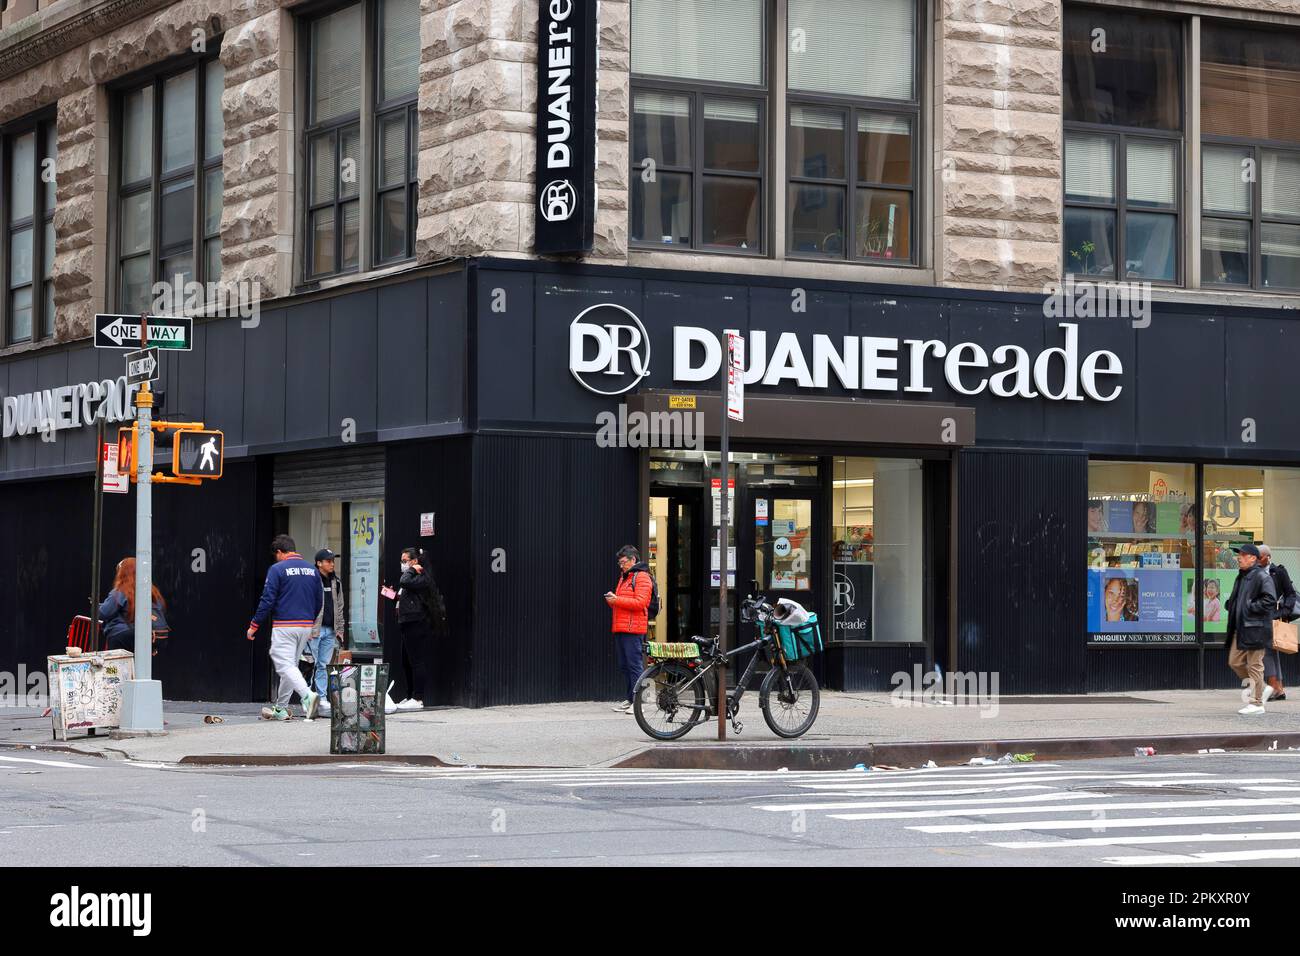 Duane Reade, 305 Broadway, New York, New York, New York, New York, NYC-Laden einer Apotheke in Lower Manhattan an der Ecke Duane Street und einen Block von der Reade St. entfernt Stockfoto